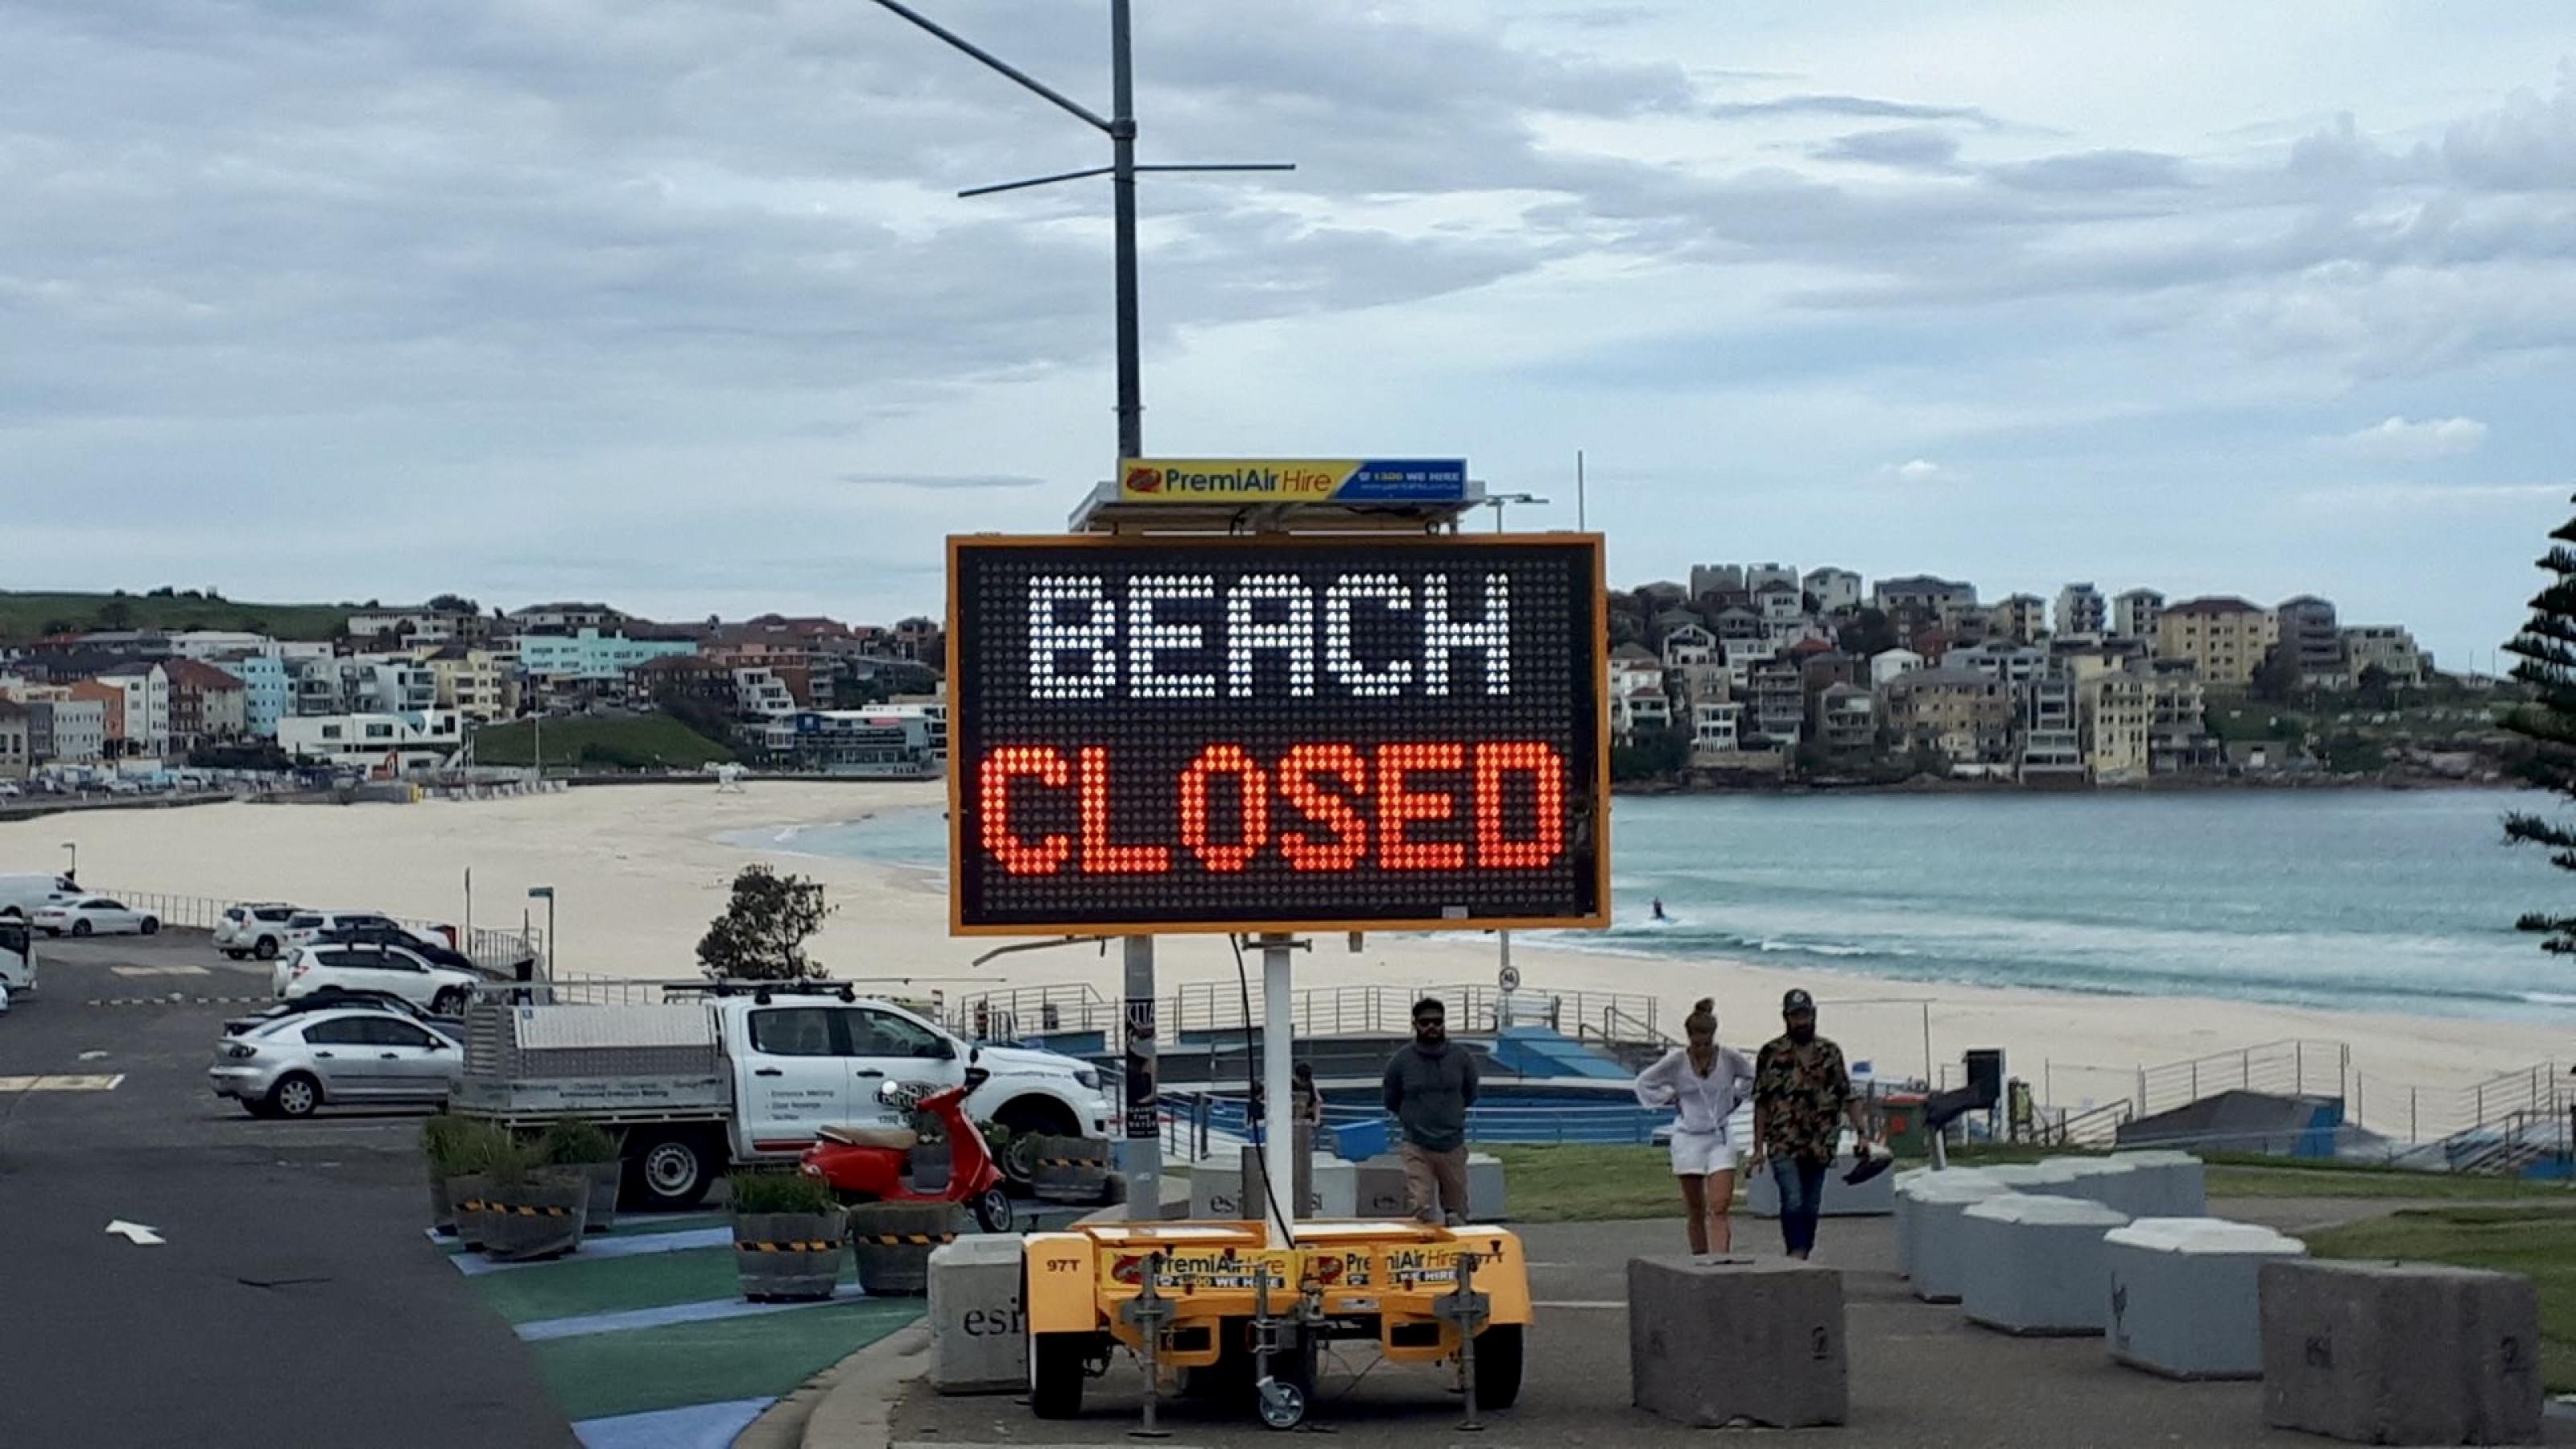 Ein Verbotsschild sperrt Bondi Beach ab, Sydneys berühmtesten Strand. Tausende tummelten sich hier auch nachdem die Behörend um social distancing gebeten hatten. Dann griffen drastische Maßnahmen